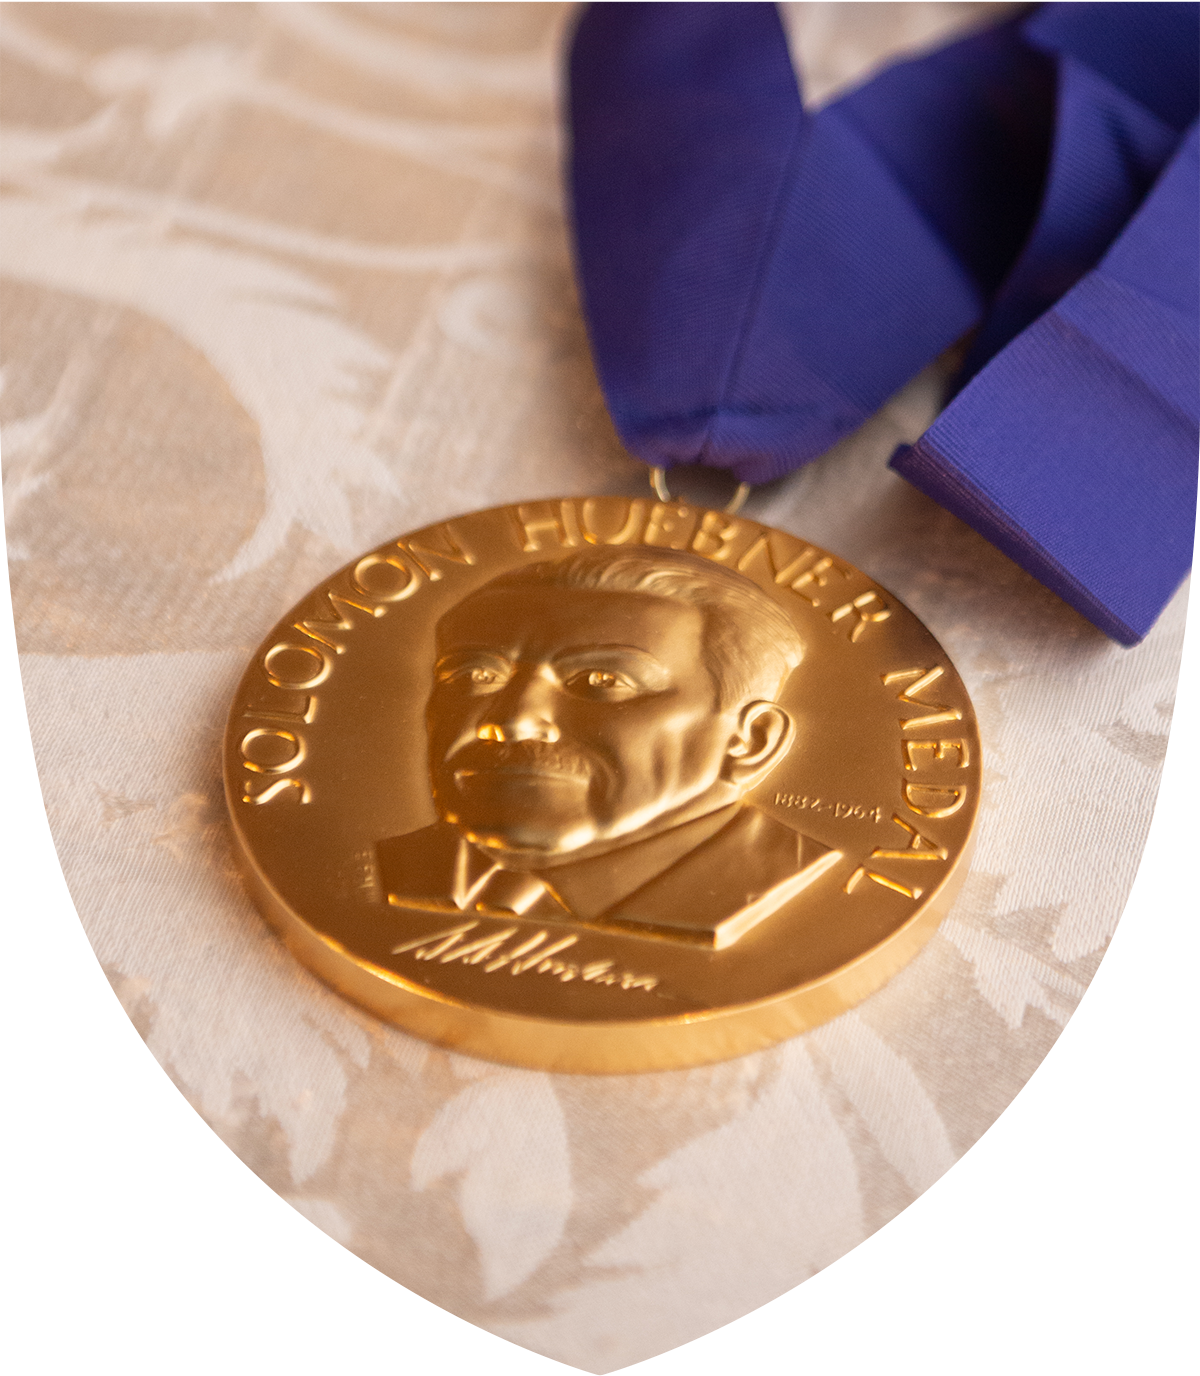 Huebner medal